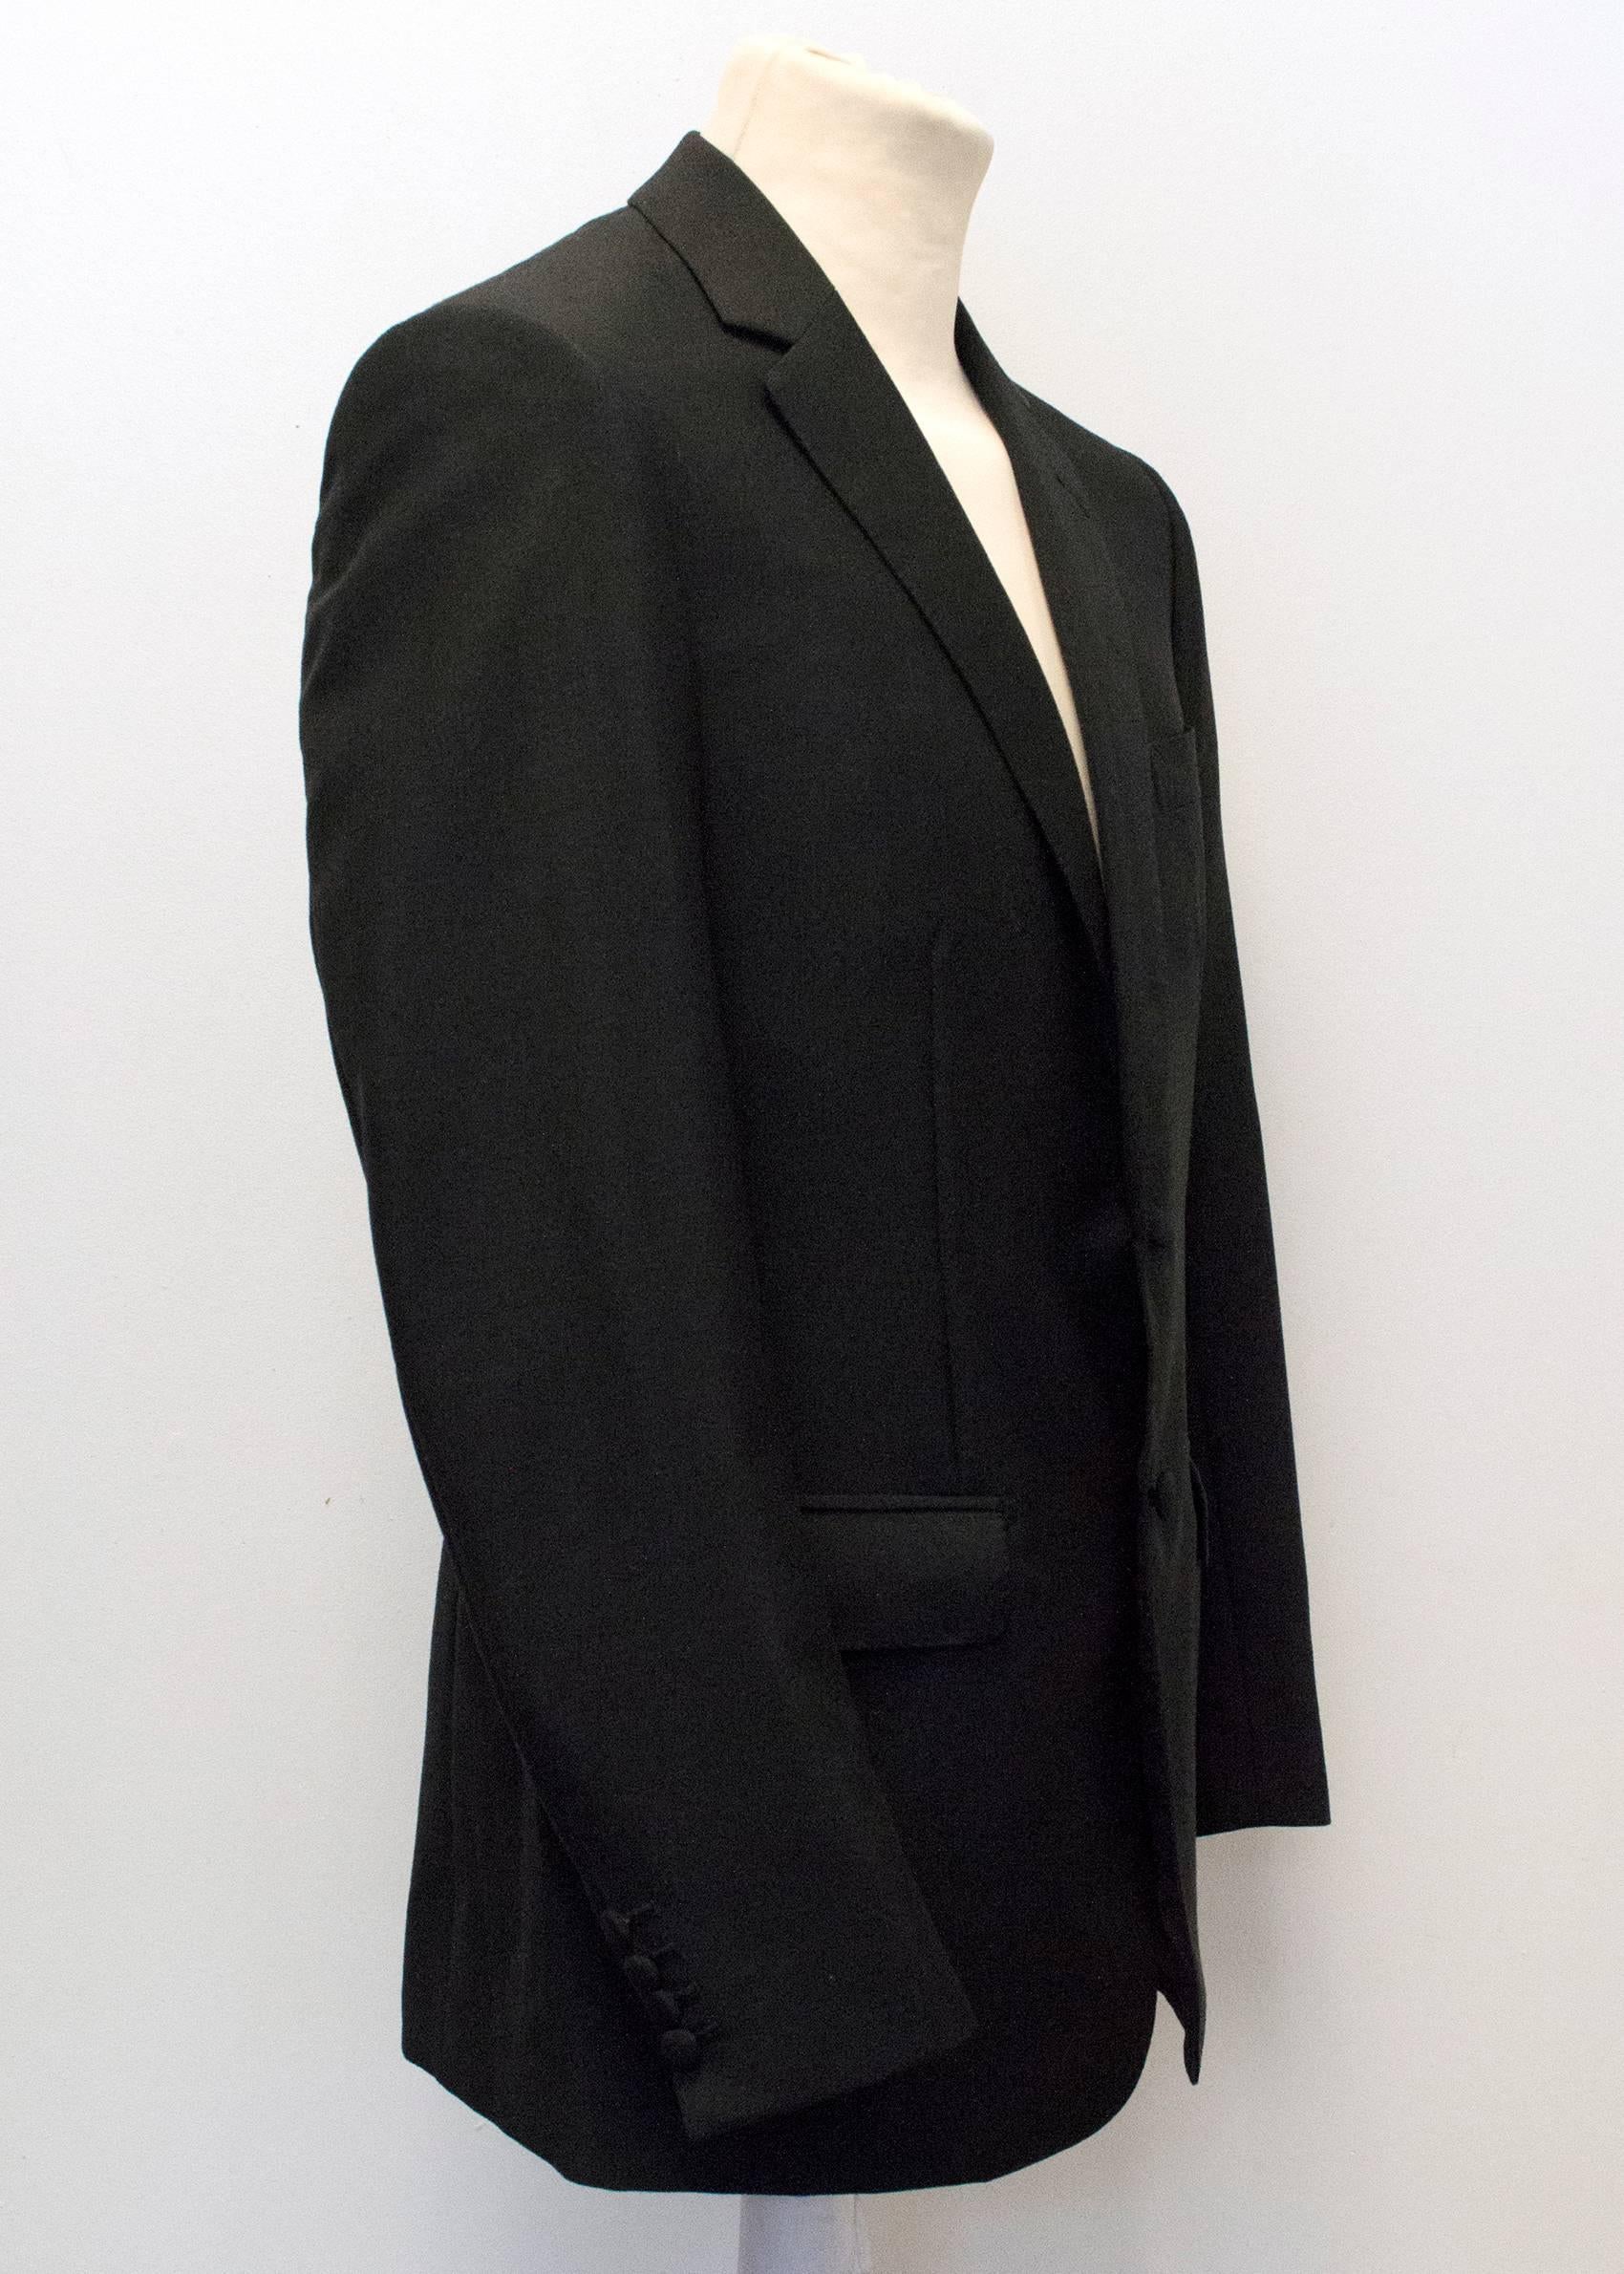 Kilgour Black Wool Trouser Suit For Sale 4